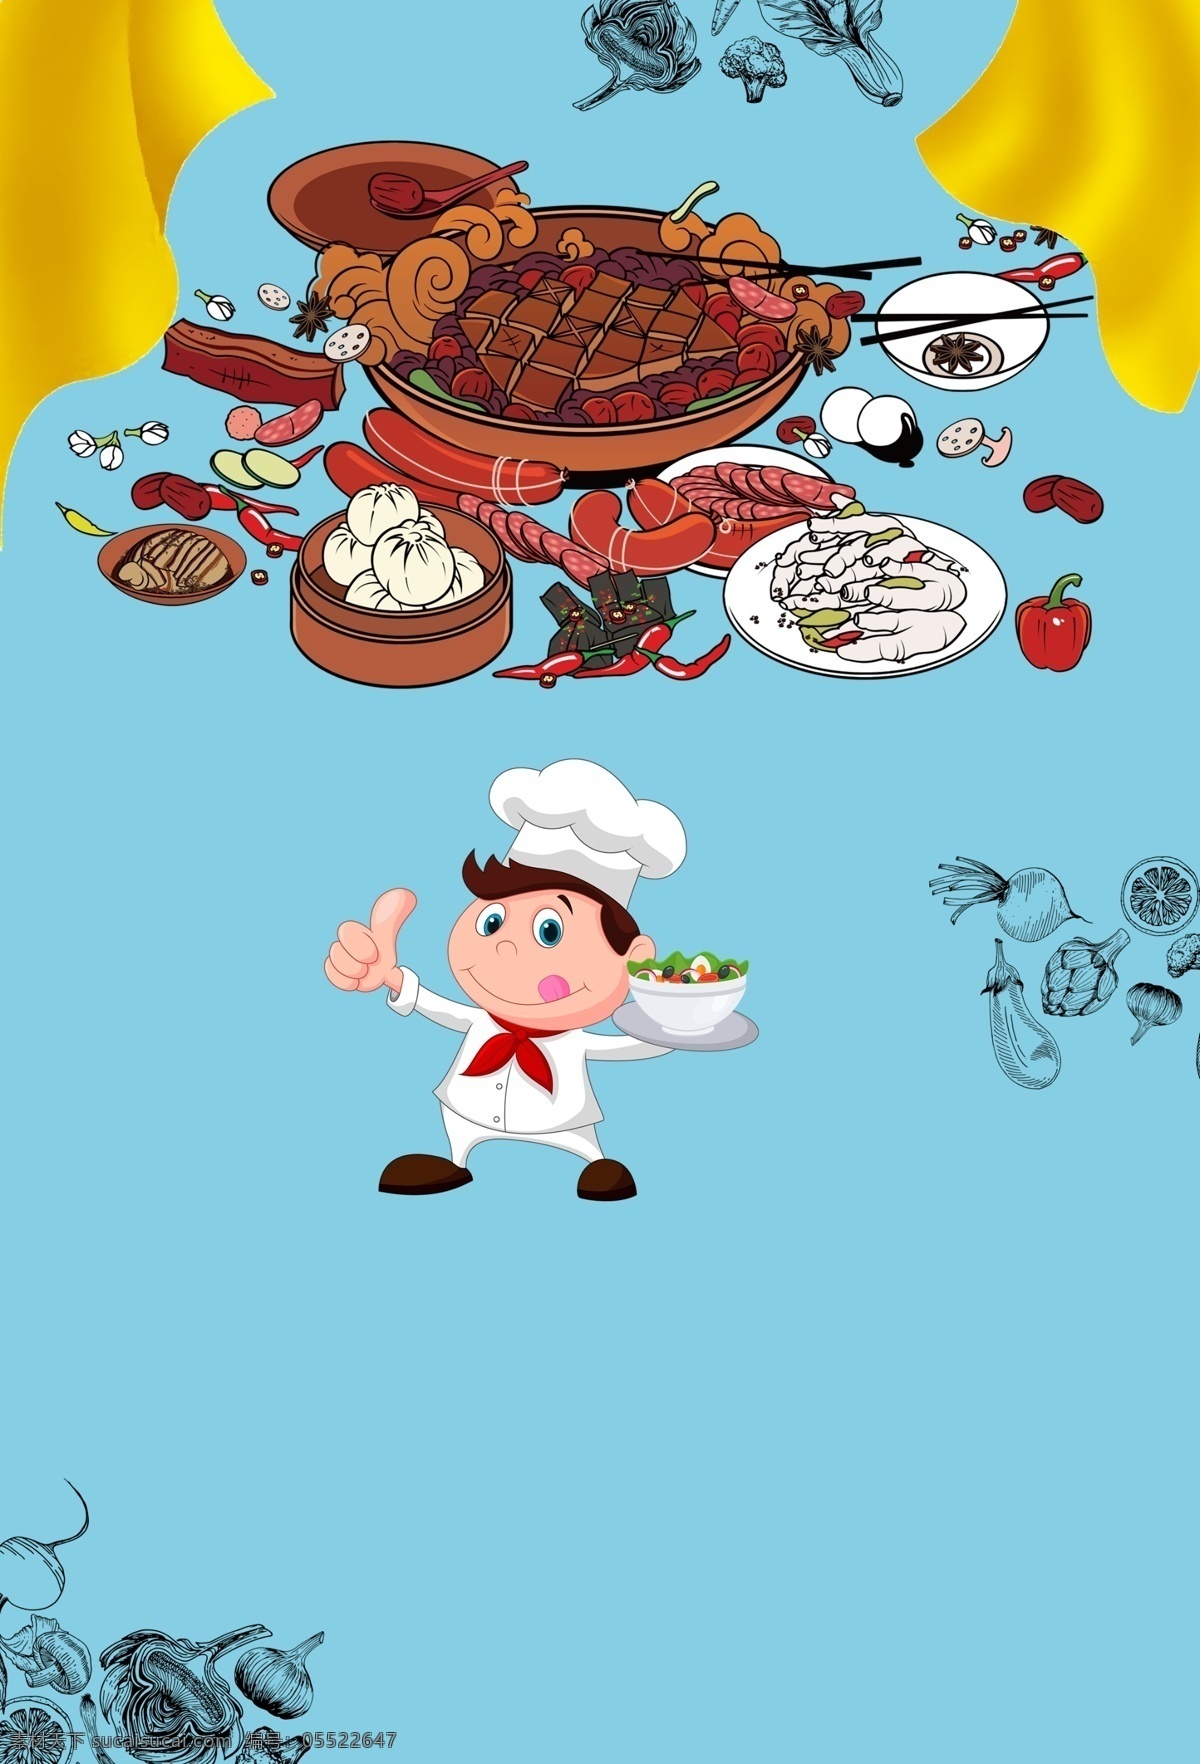 卡通 美食 背景 卡通背景 蓝色 背景图 创意 美食背景 厨师 海鲜 包子 香肠 彩绘背景 手绘背景 背景展板 特邀背景 背景展板图 美食展板